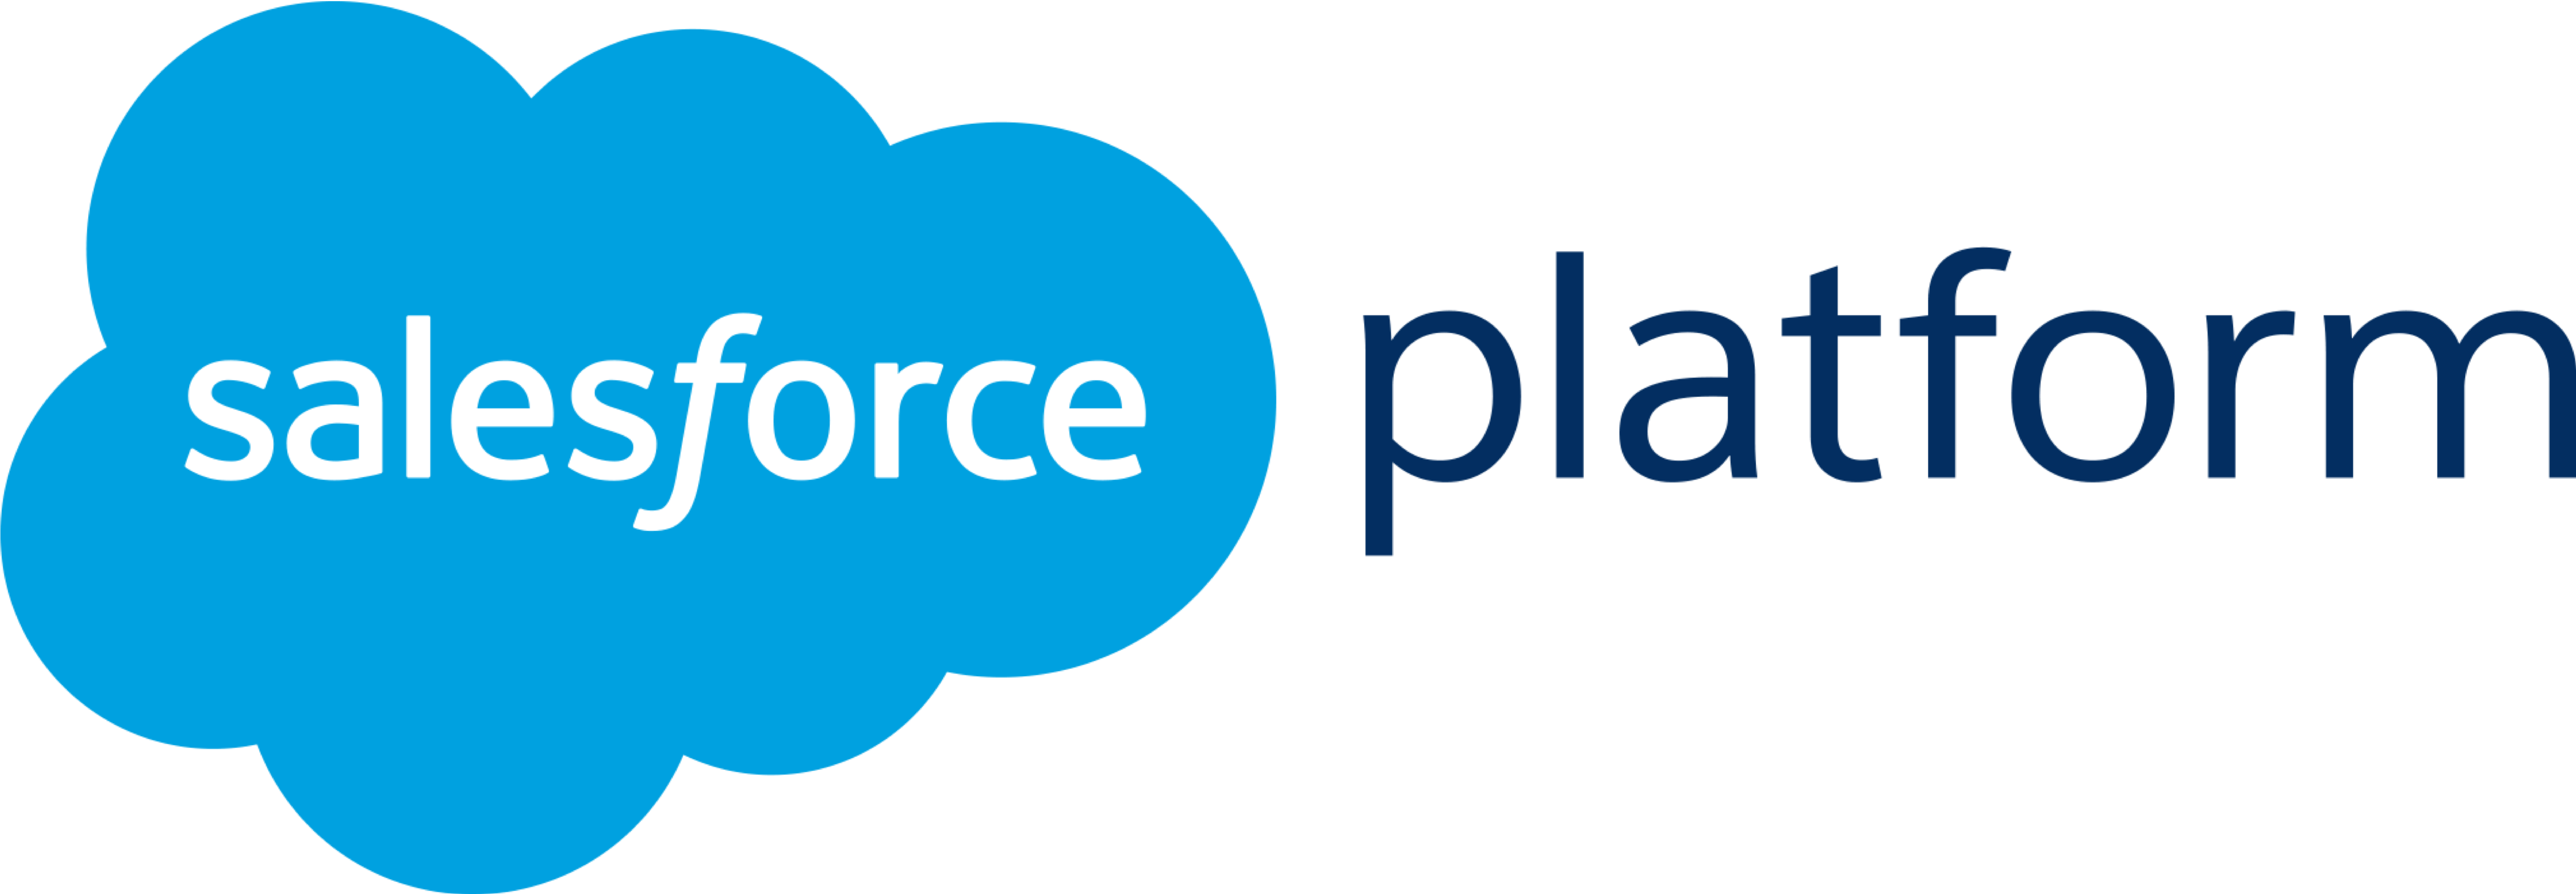 Salesforce Platform Logo - SoftwareReviews. Salesforce Platform. Make Better IT Decisions